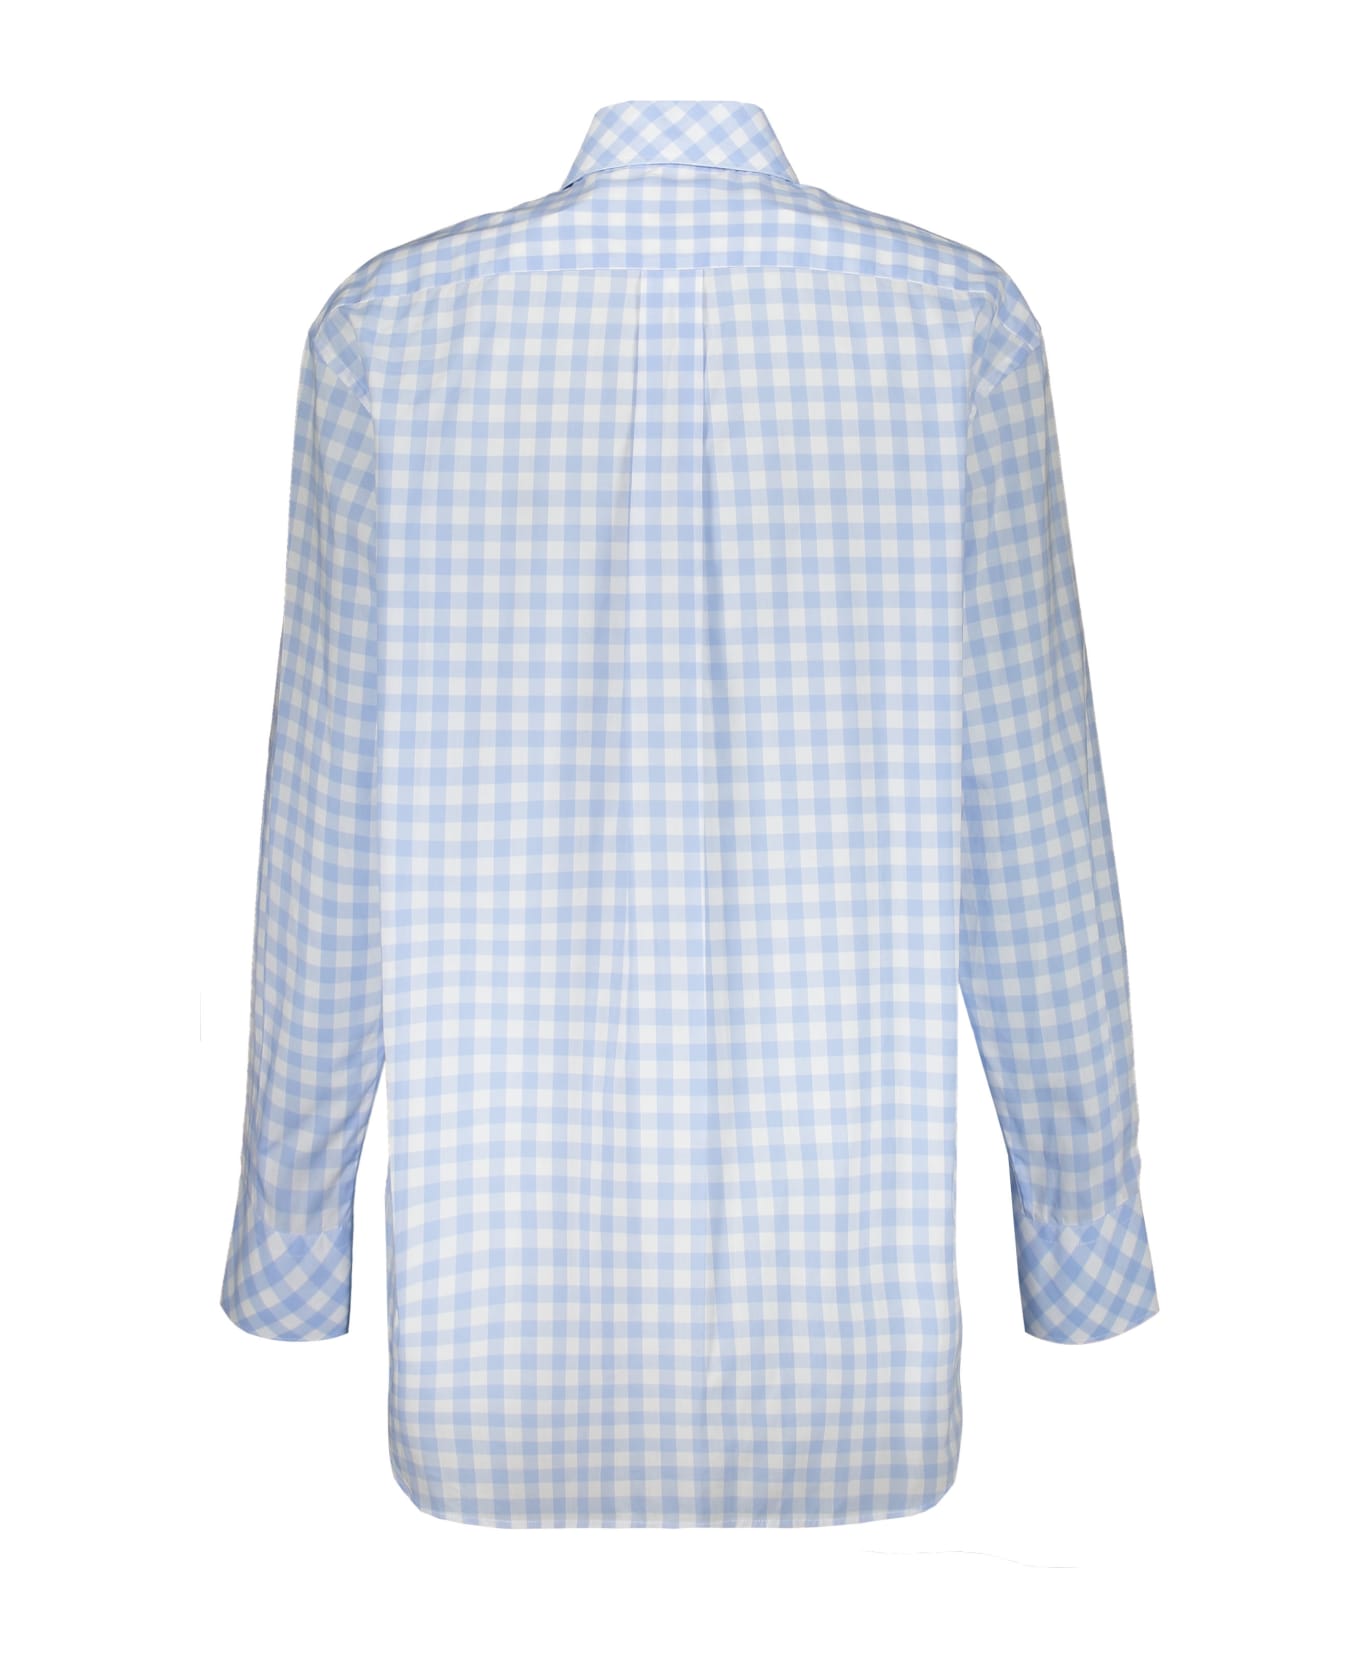 Burberry Cotton Shirt - Light Blue